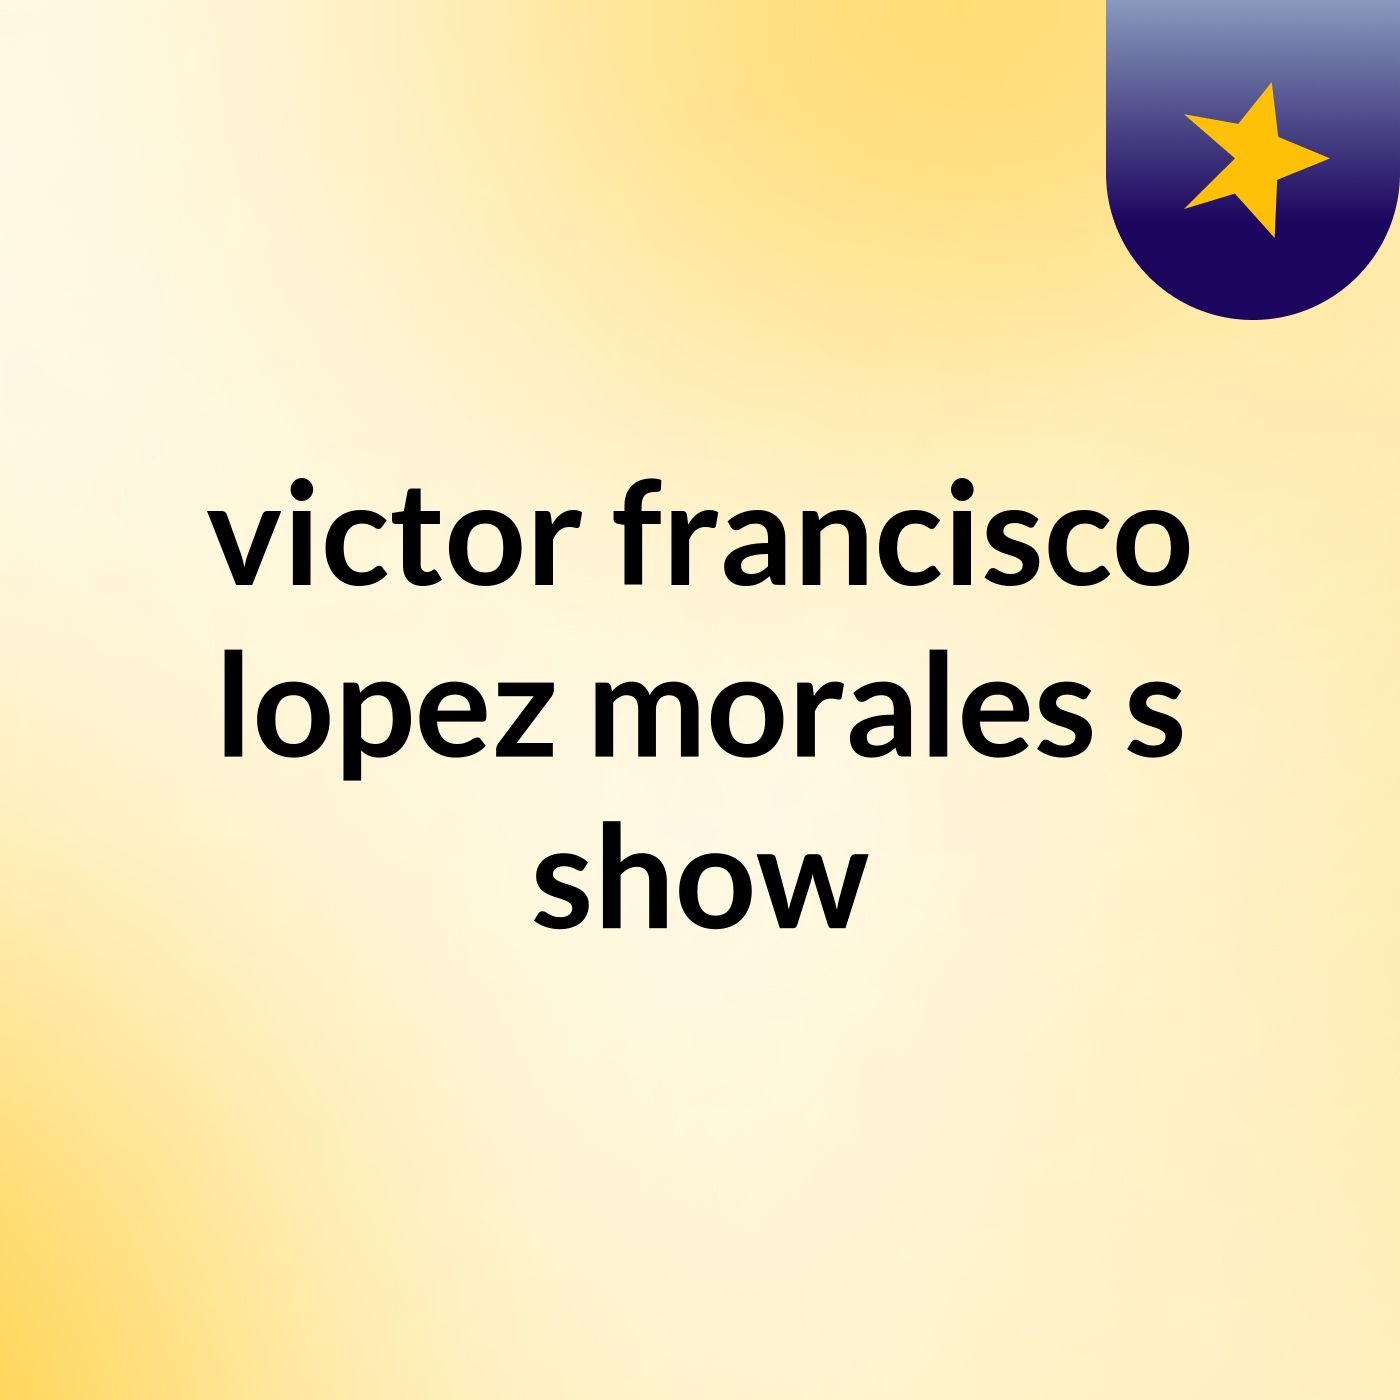 victor francisco lopez morales's show